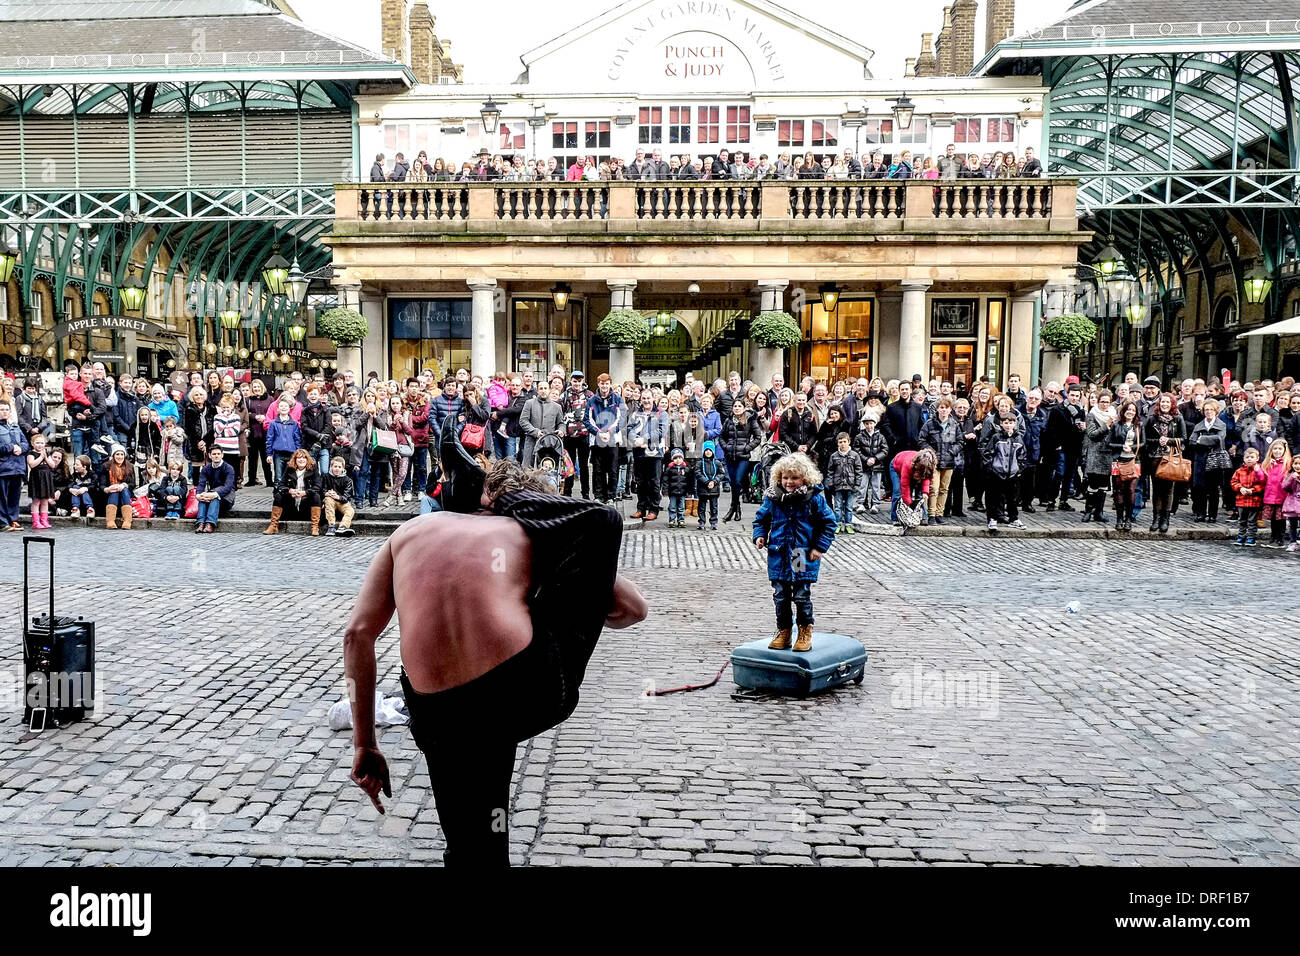 Ein Schlangenmensch unterhält das Publikum in Covent Garden Piazza. Stockfoto